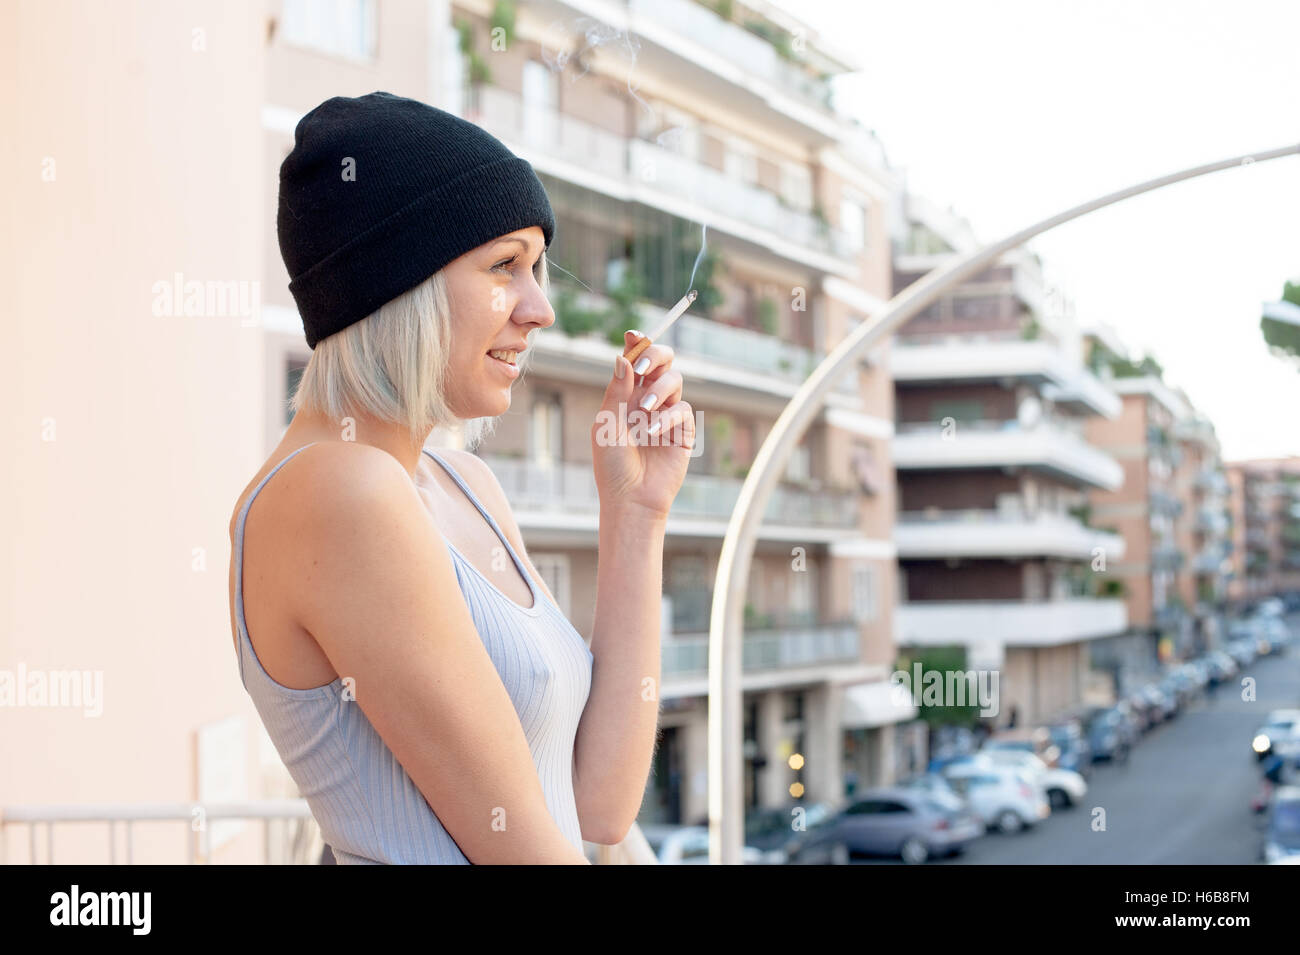 Young Teen donna il fumo di sigarette e sorridente outdoor con la scena urbana in background Foto Stock